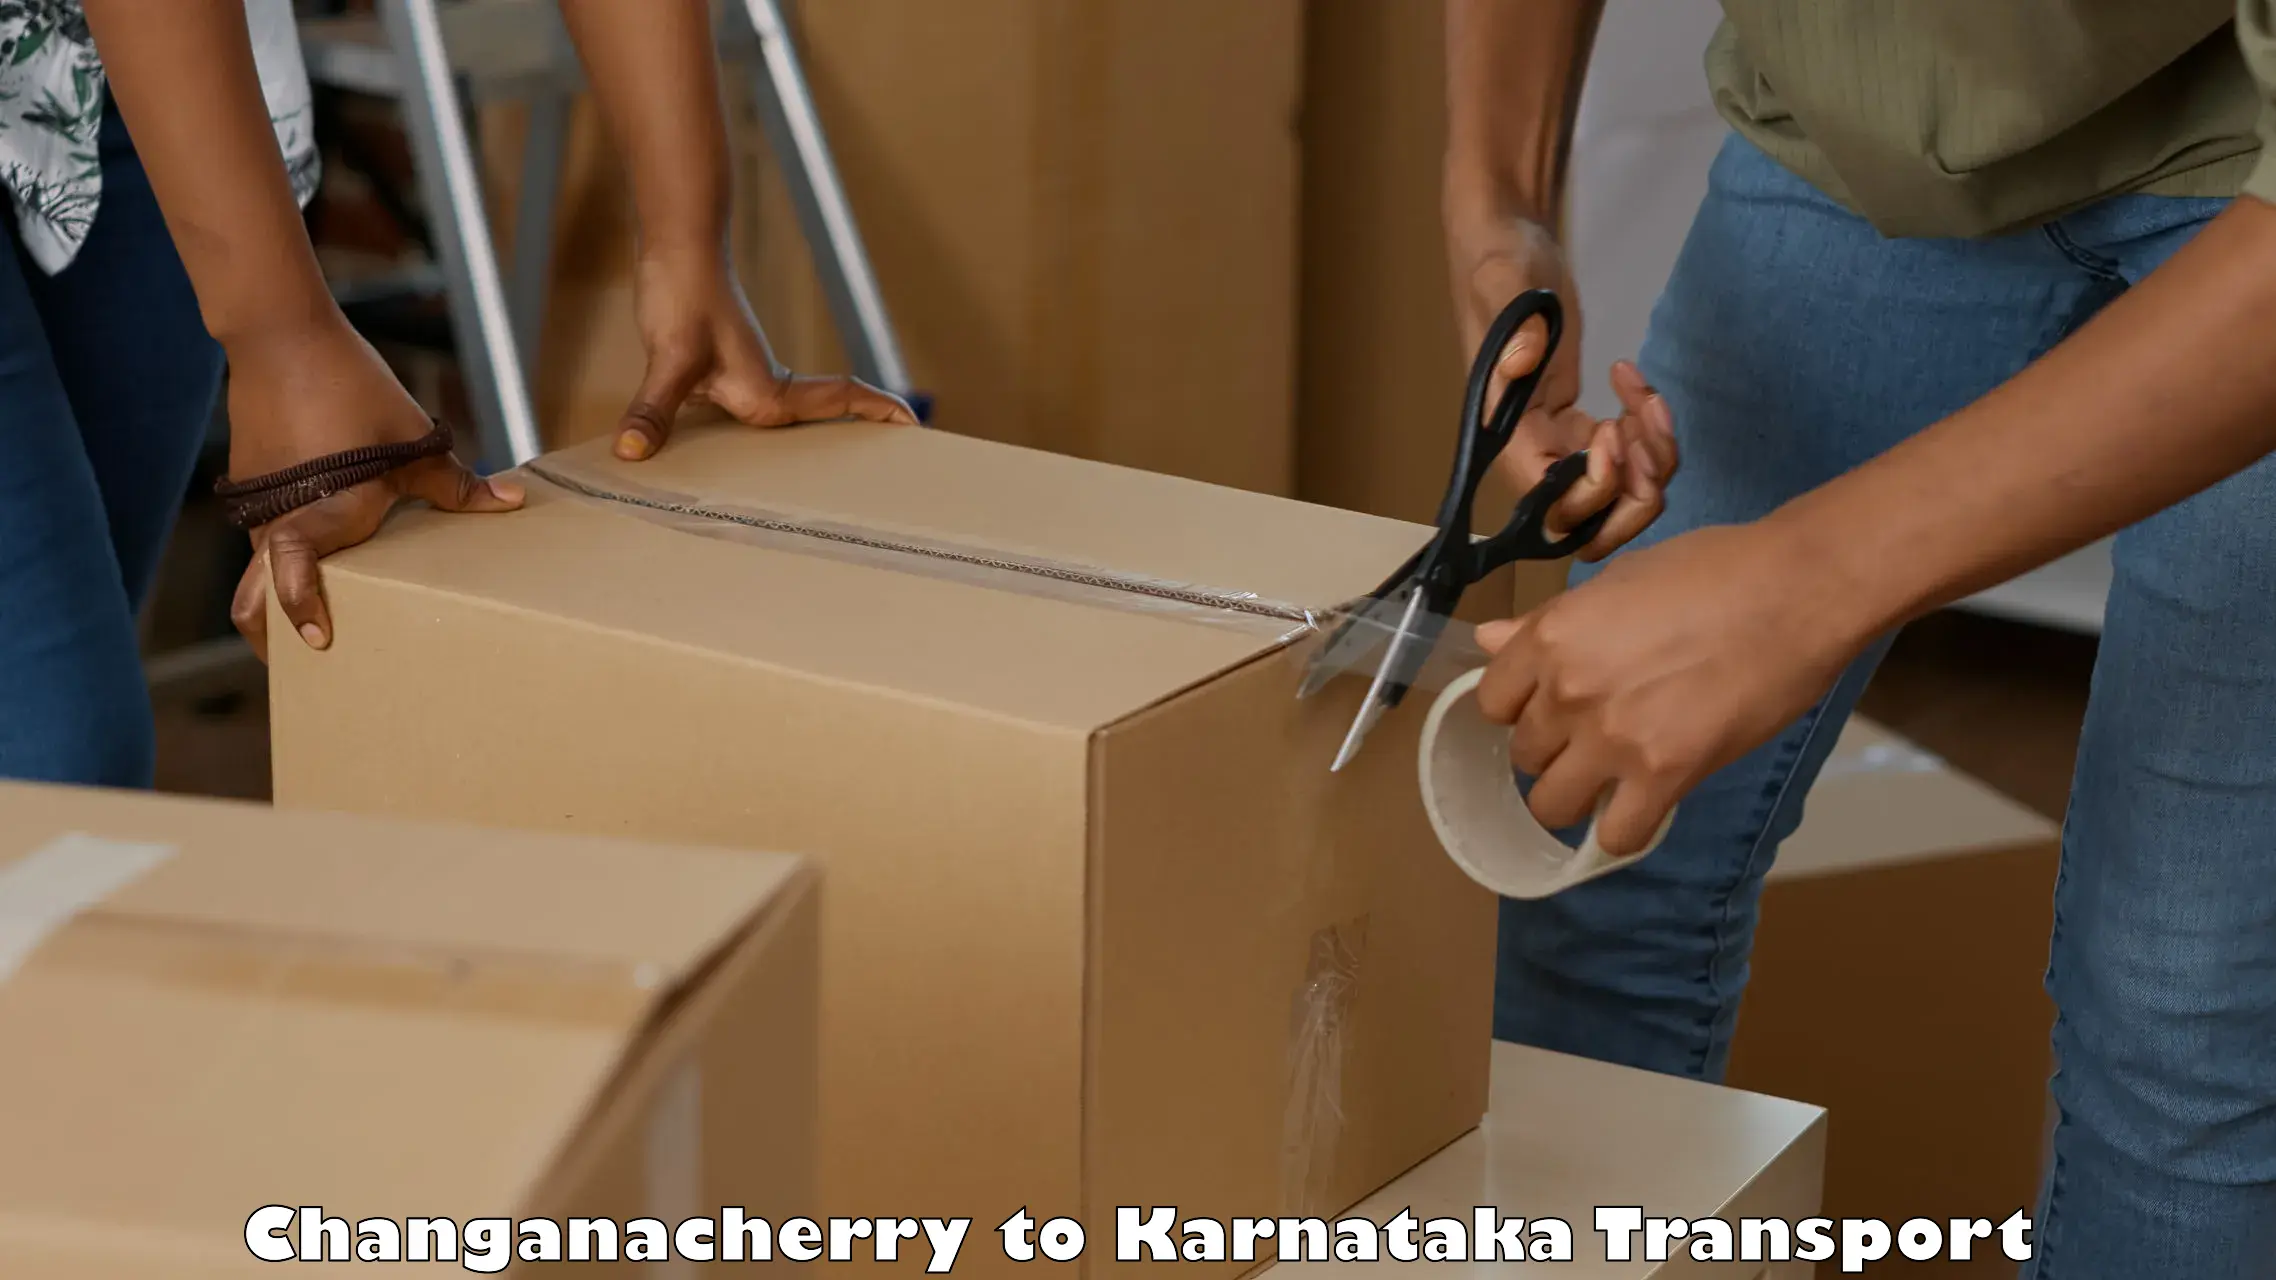 Delivery service Changanacherry to Jayanagar